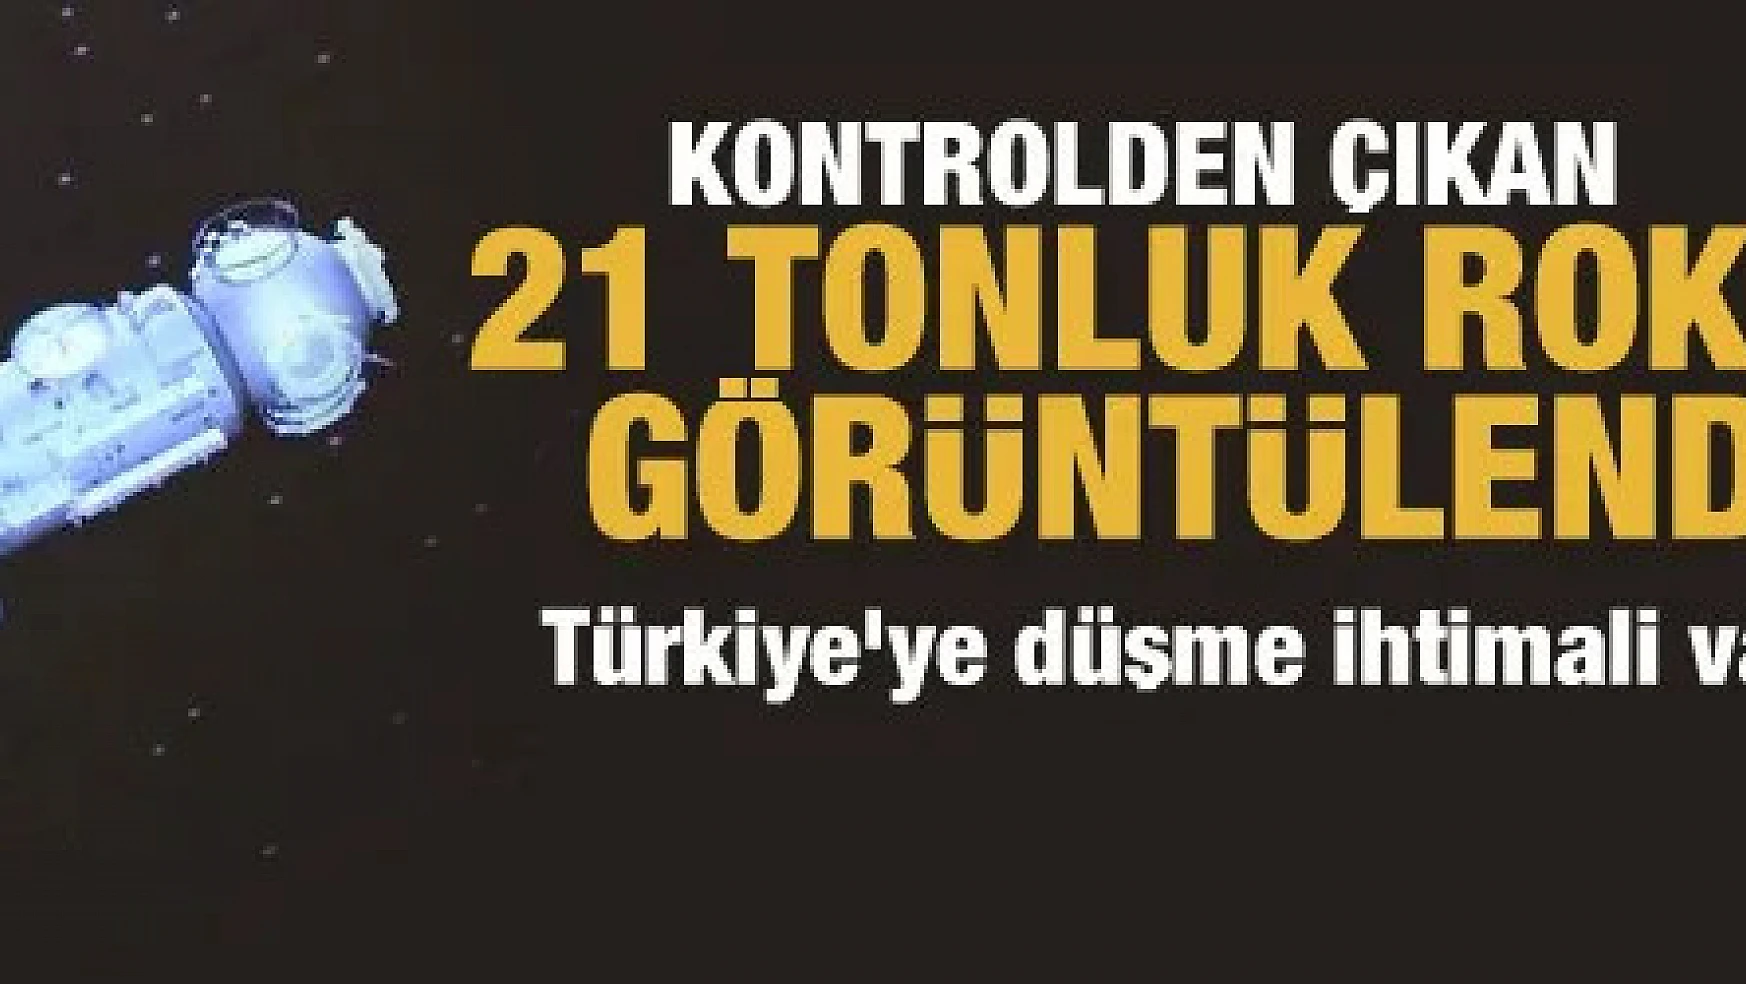 Kontrolden çıkan 21 tonluk roket görüntülendi! Türkiye'ye düşme ihtimali var